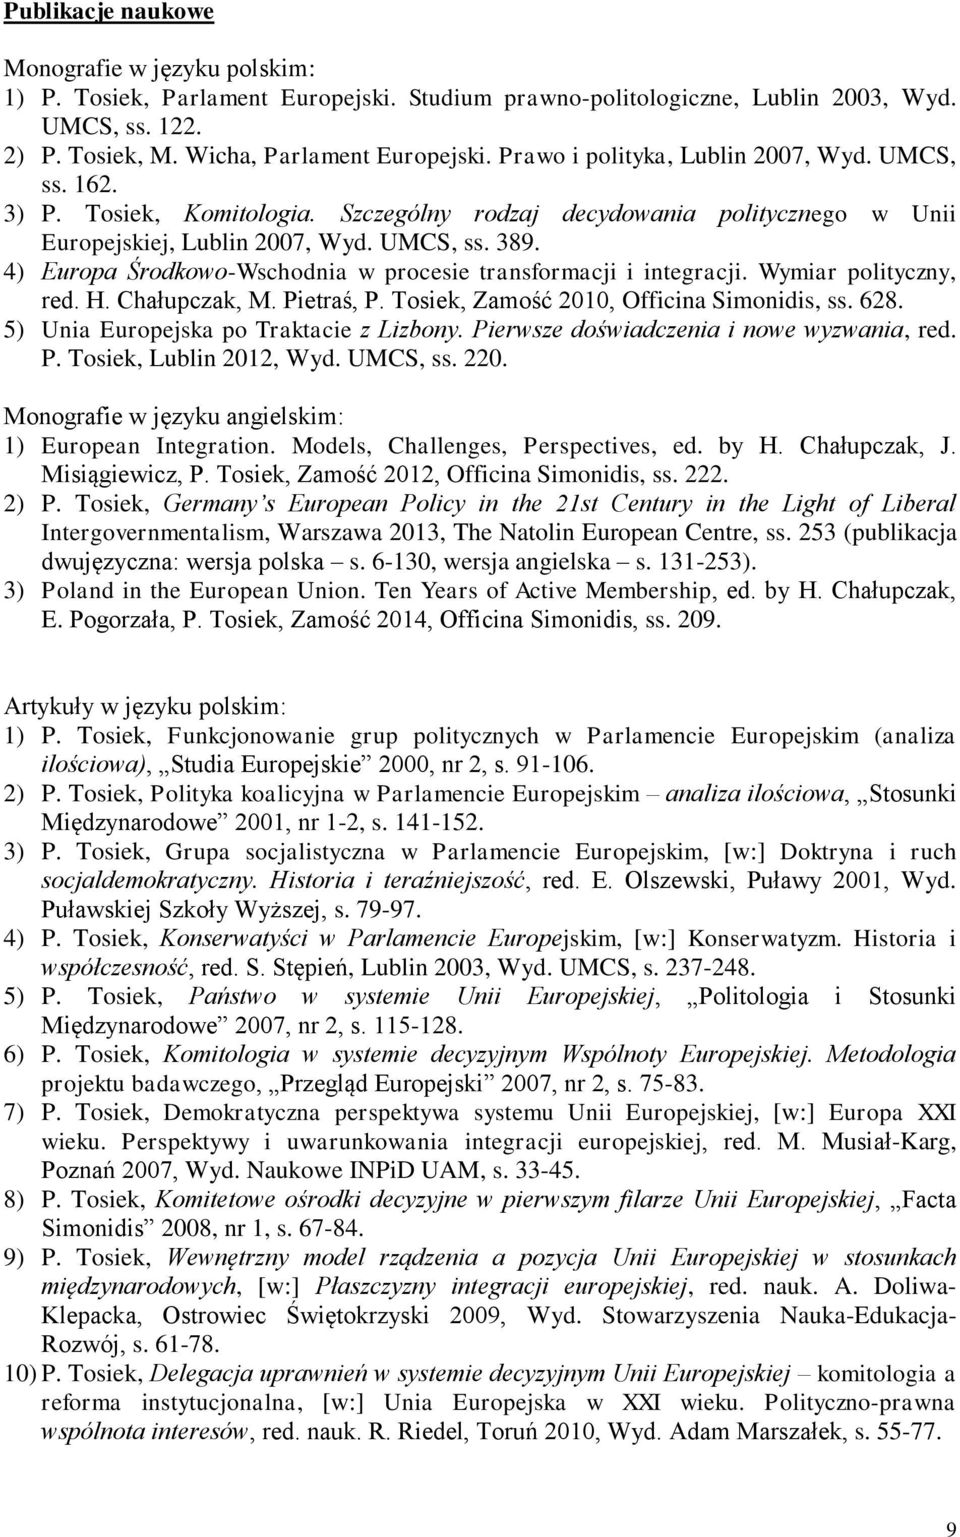 4) Europa Środkowo-Wschodnia w procesie transformacji i integracji. Wymiar polityczny, red. H. Chałupczak, M. Pietraś, P. Tosiek, Zamość 2010, Officina Simonidis, ss. 628.